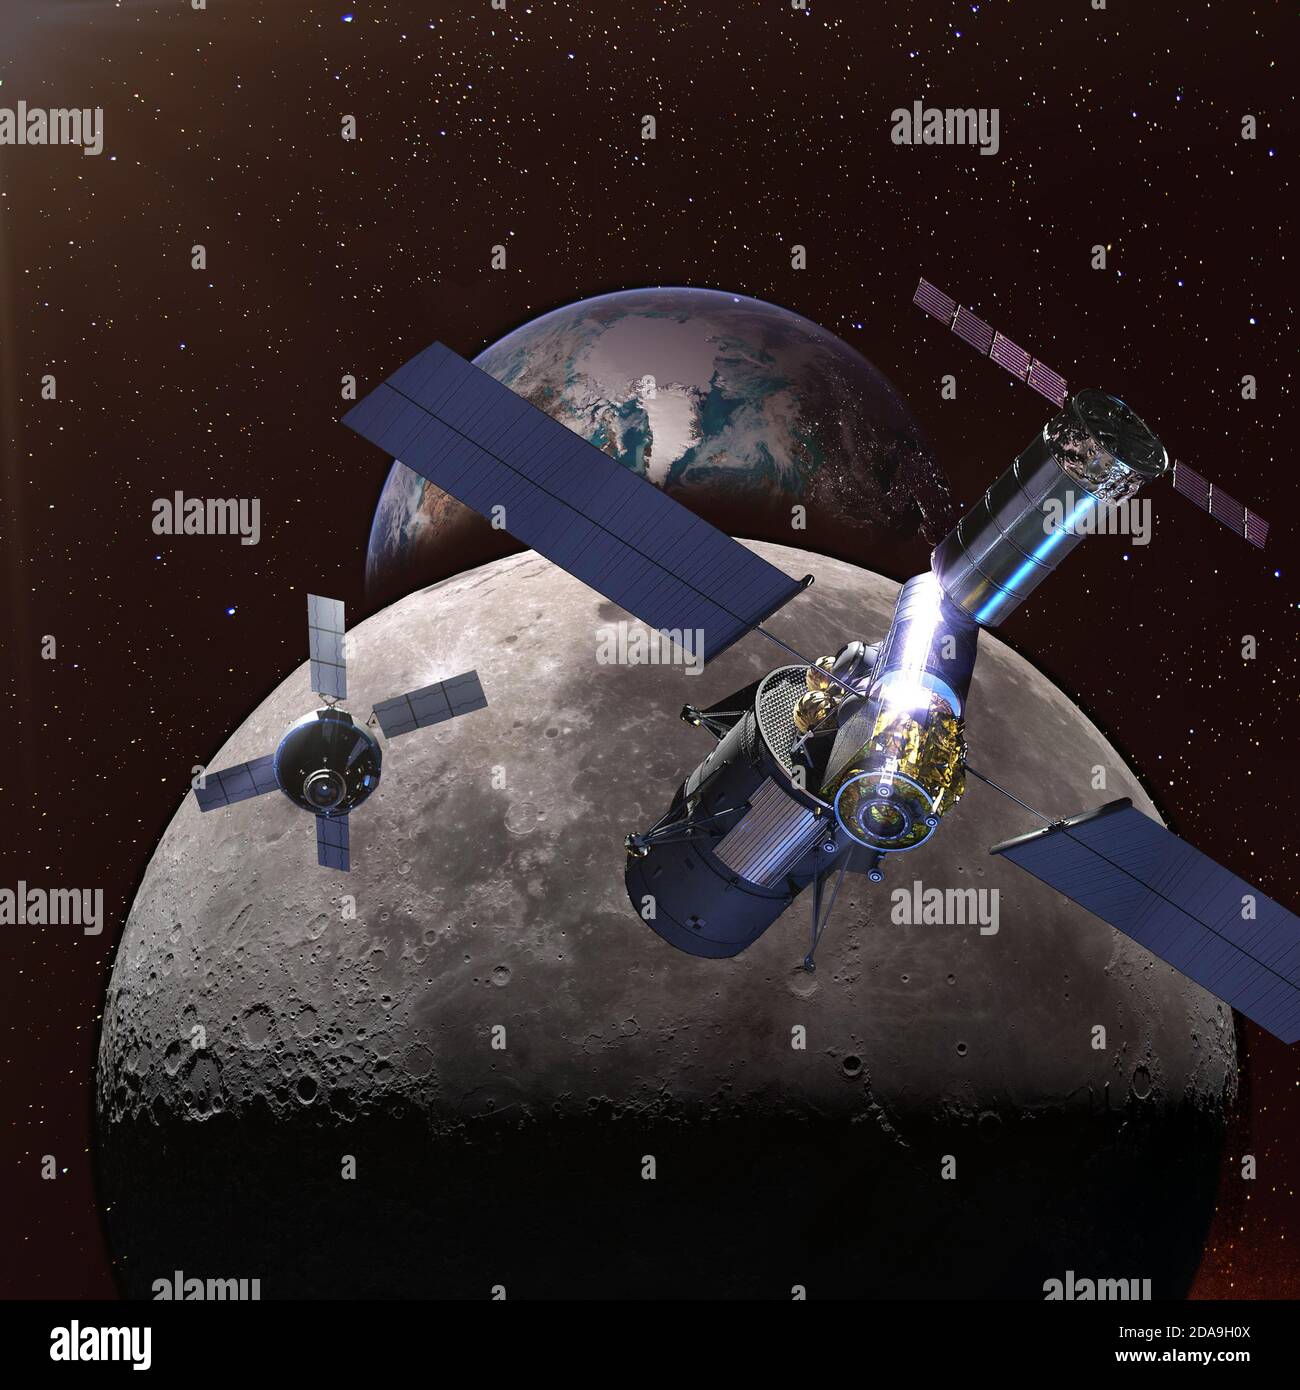 Raumschiffe im Raum über Mond und Erde weit entfernt in der Nacht auf dem Hintergrund. Elemente dieses Bildes, die von der NASA eingerichtet wurden. Stockfoto